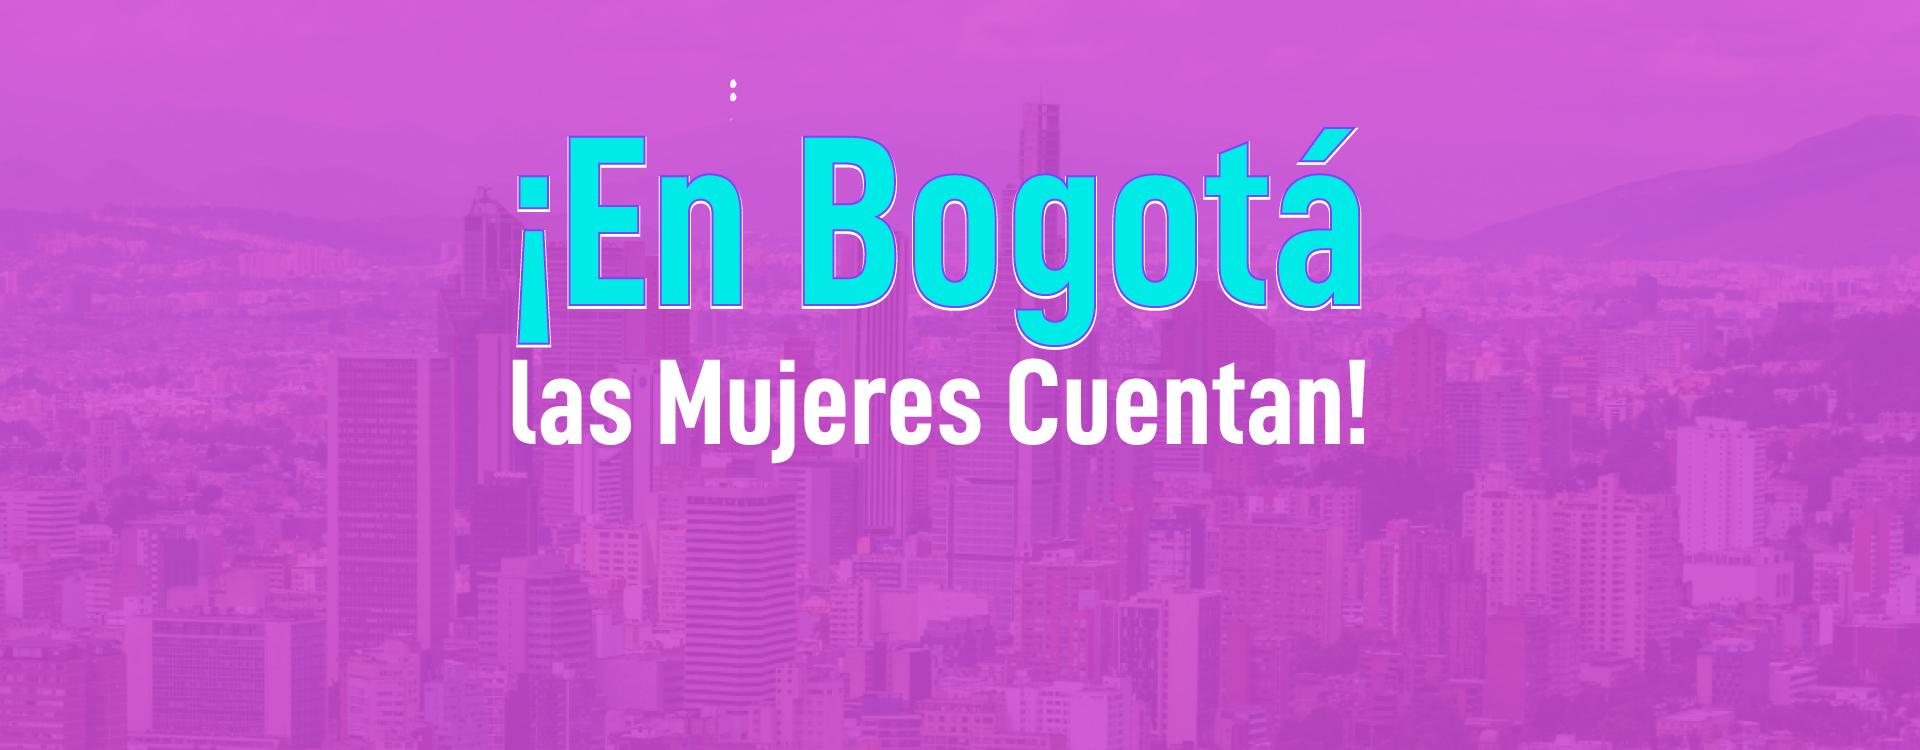 ¡En Bogotá las mujeres cuentan!